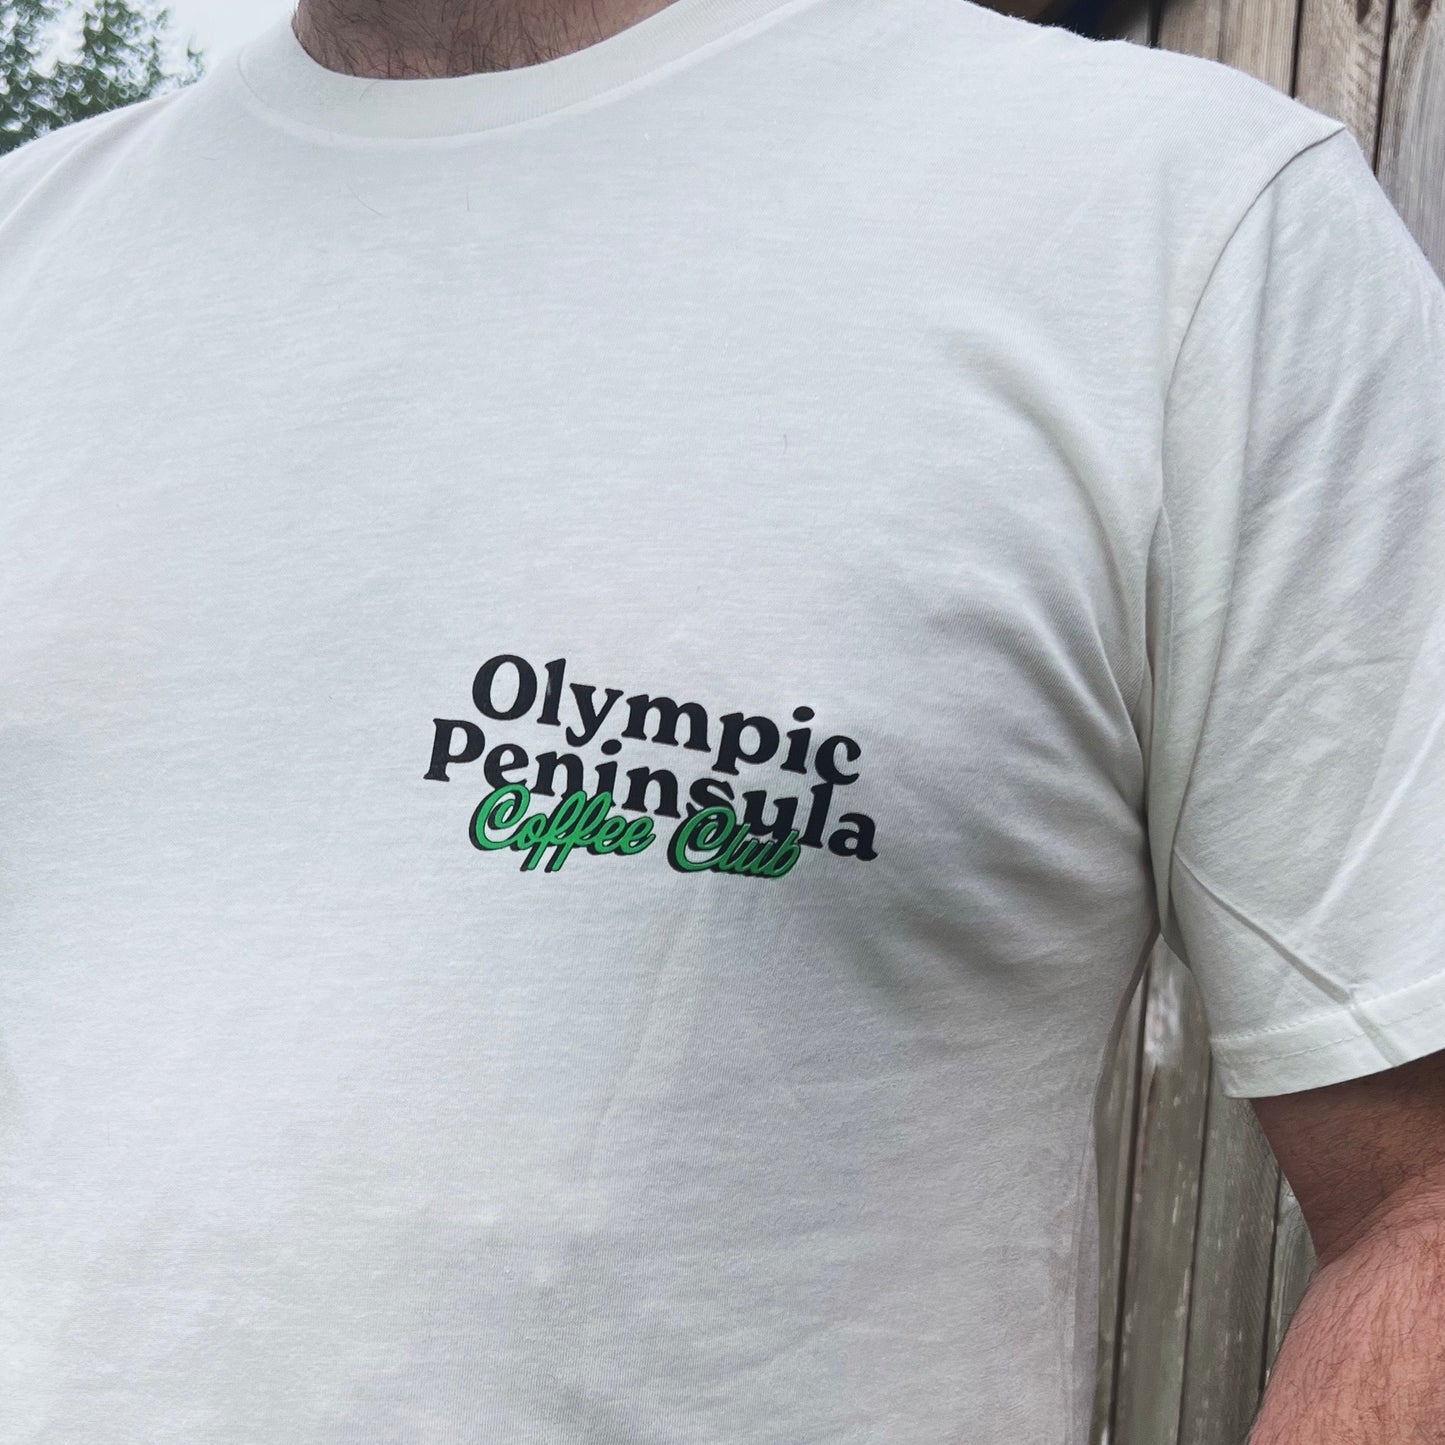 Olympic Peninsula Coffee Club Tshirt